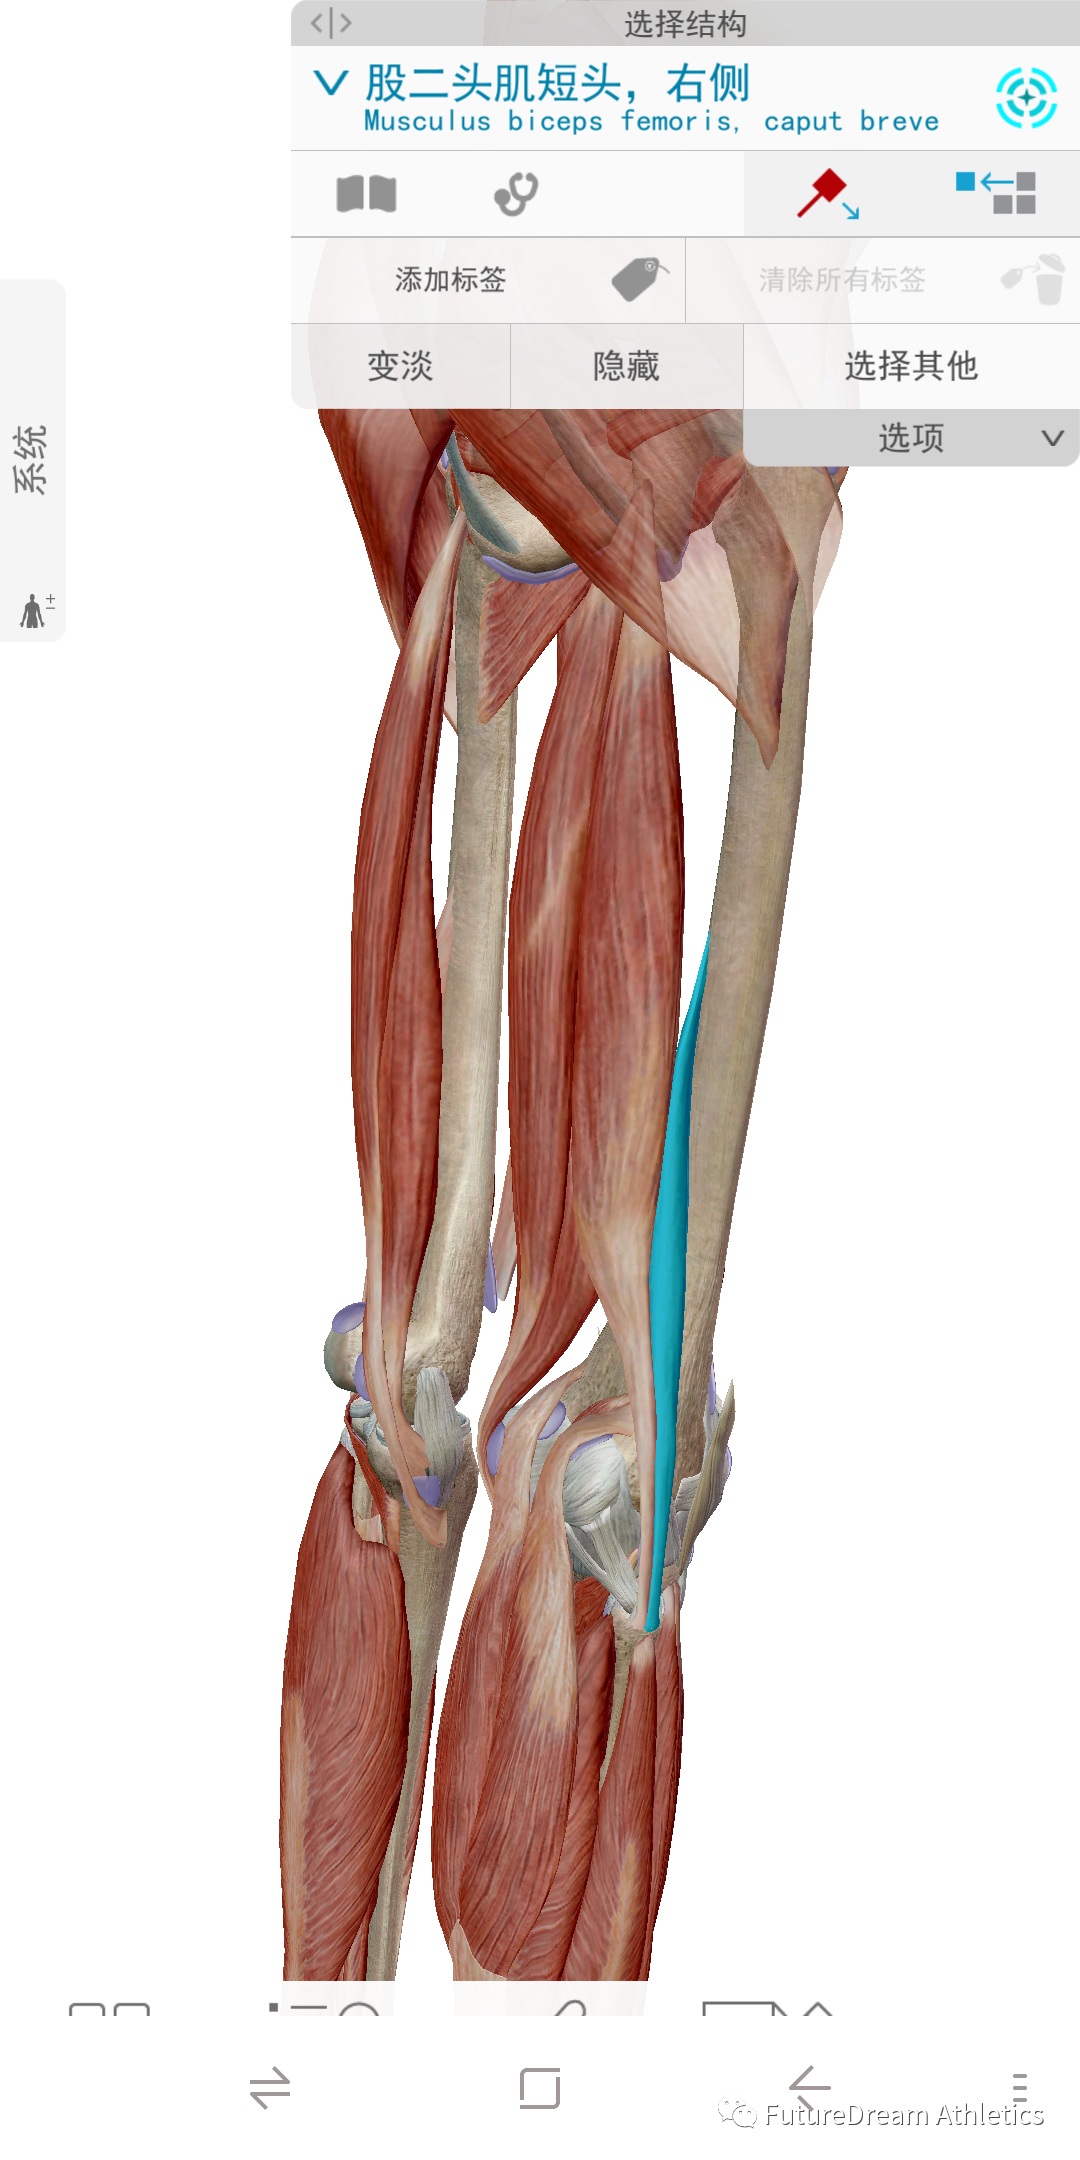 腘绳肌解剖,功能及损伤